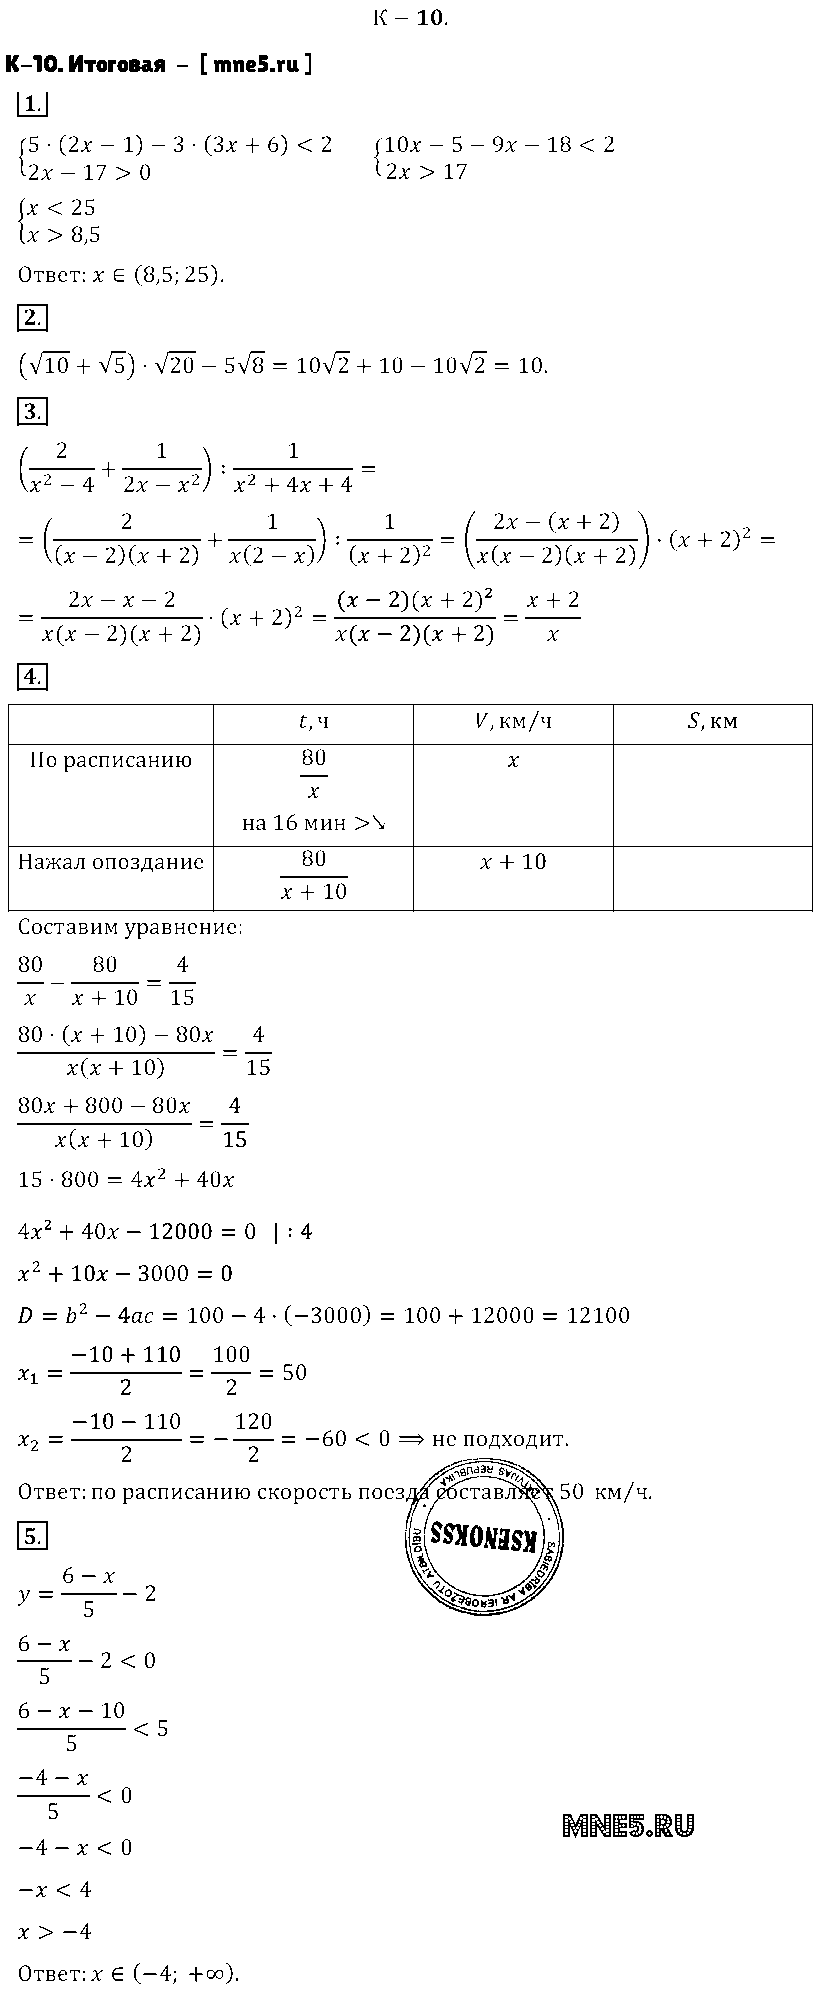 ГДЗ Алгебра 8 класс - K-10. Итоговая